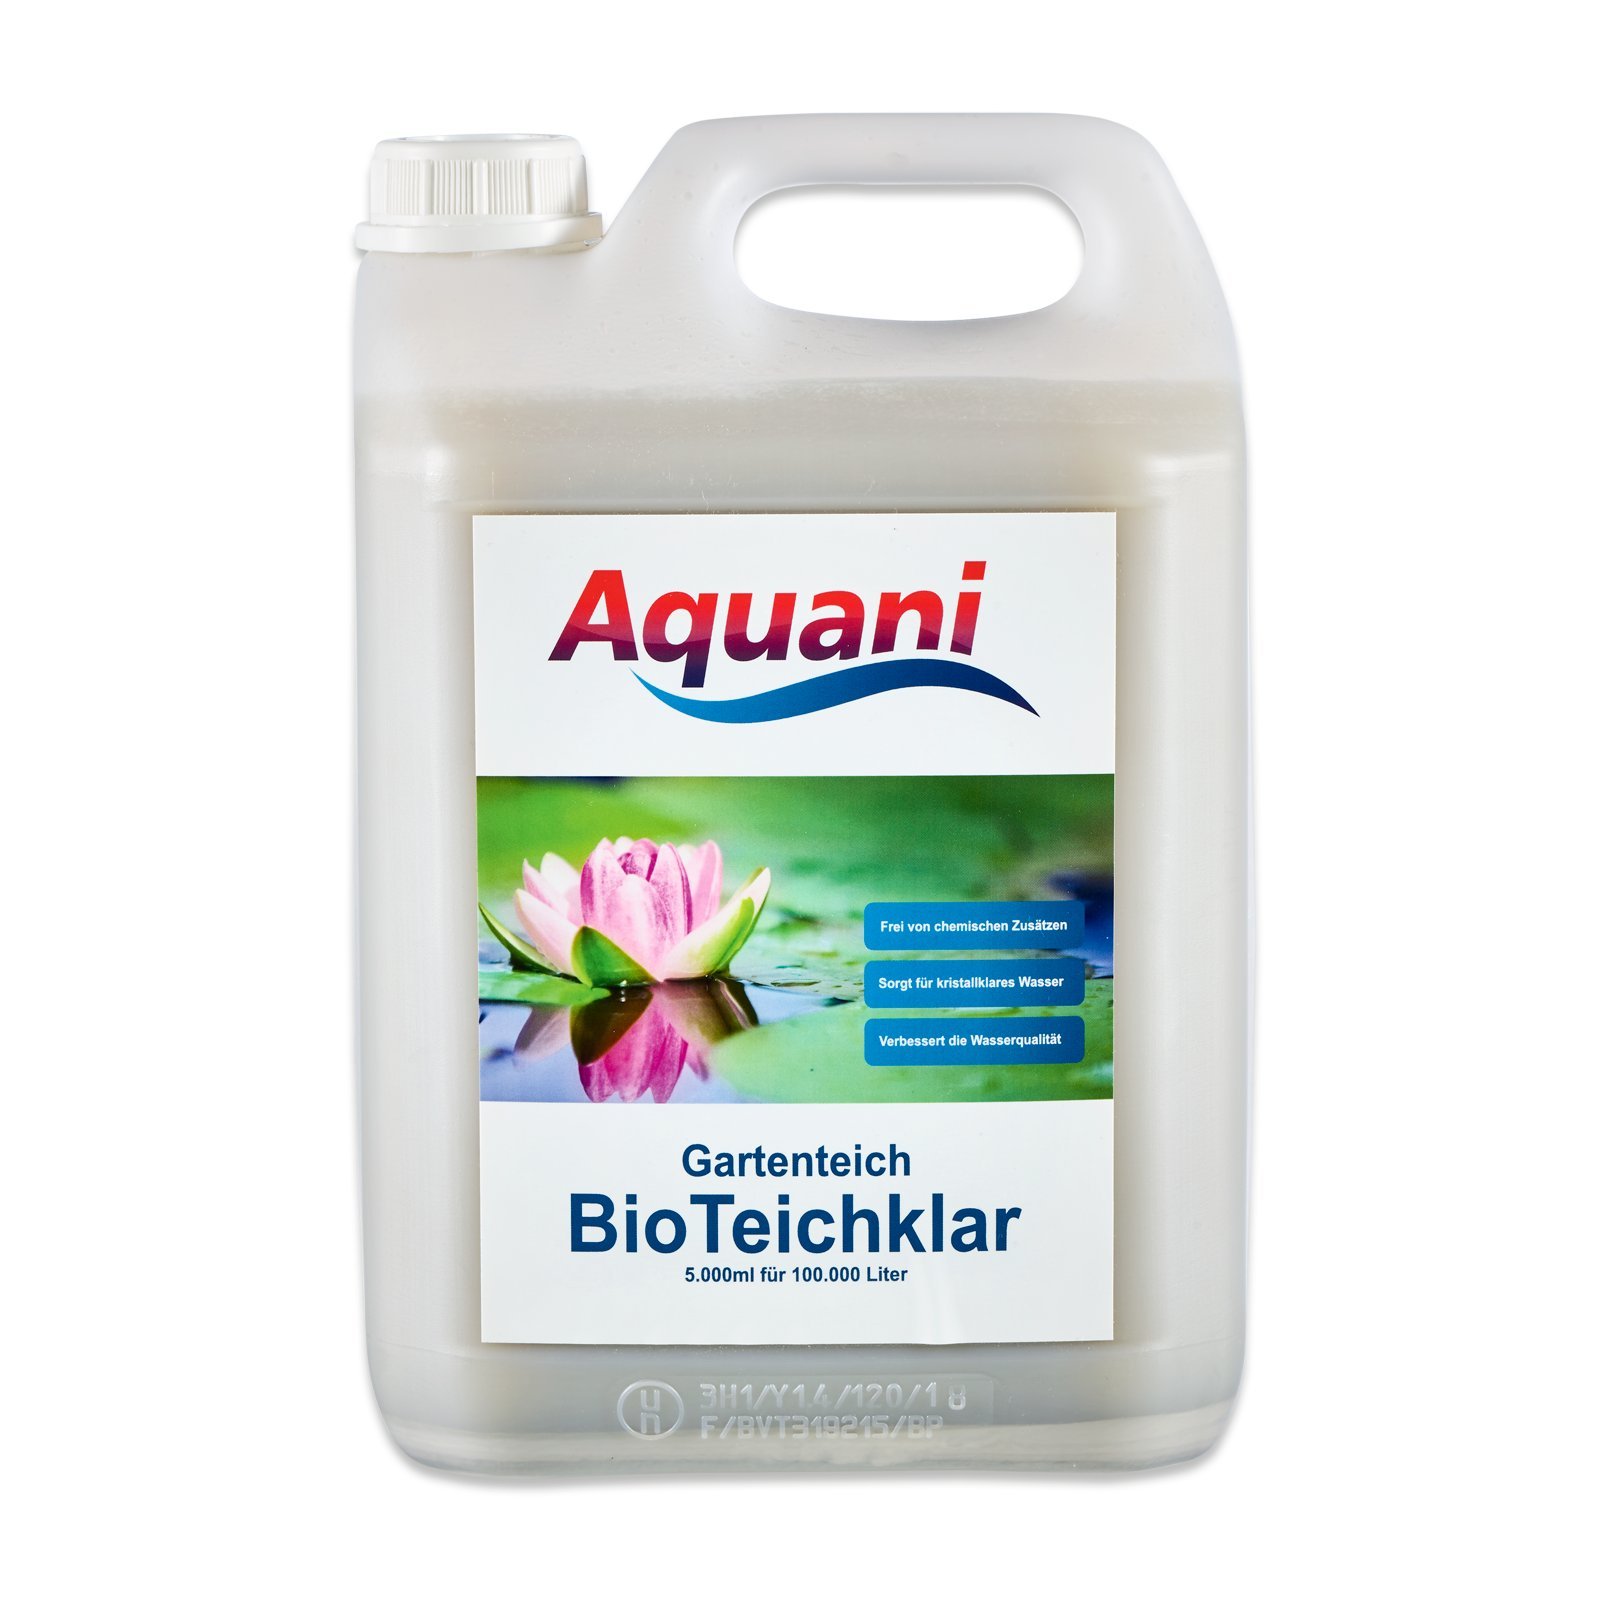 Aquani Bio Teichklar Gartenteich 5.000ml natürlicher Teichklärer für klares Wasser im Teich 100% natürliche Inhaltsstoffe effektive Teichpflege ohne chemische Zusätze ideal für Koi und Schwimmteich